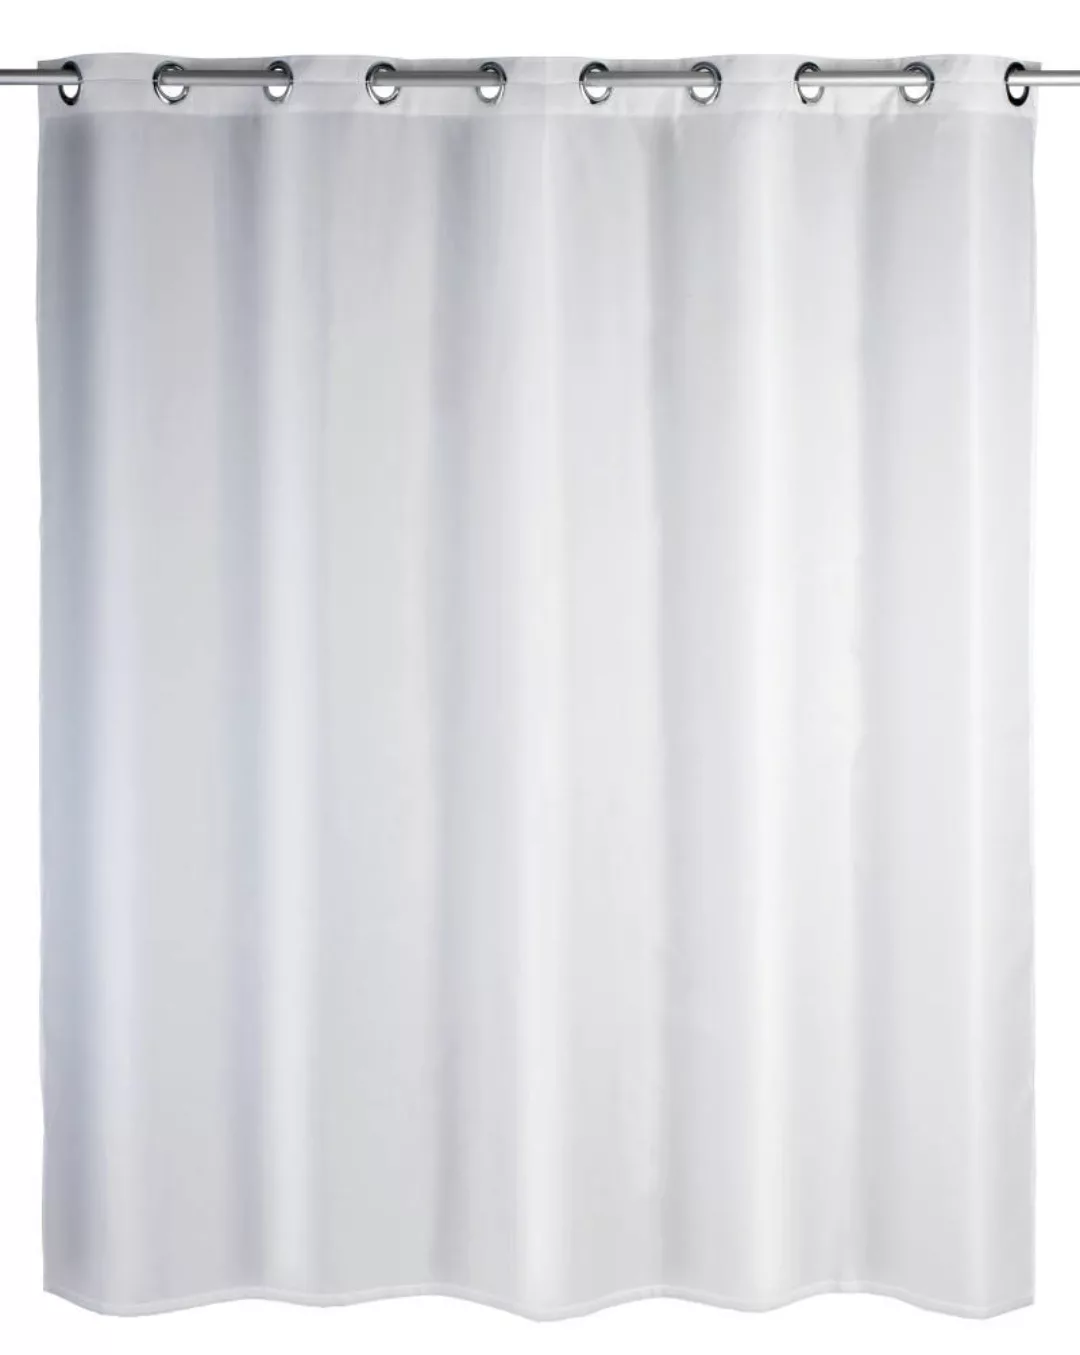 WENKO Duschvorhang Comfort Flex Weiß, Textil (Polyester), 180 x 200 cm, was günstig online kaufen